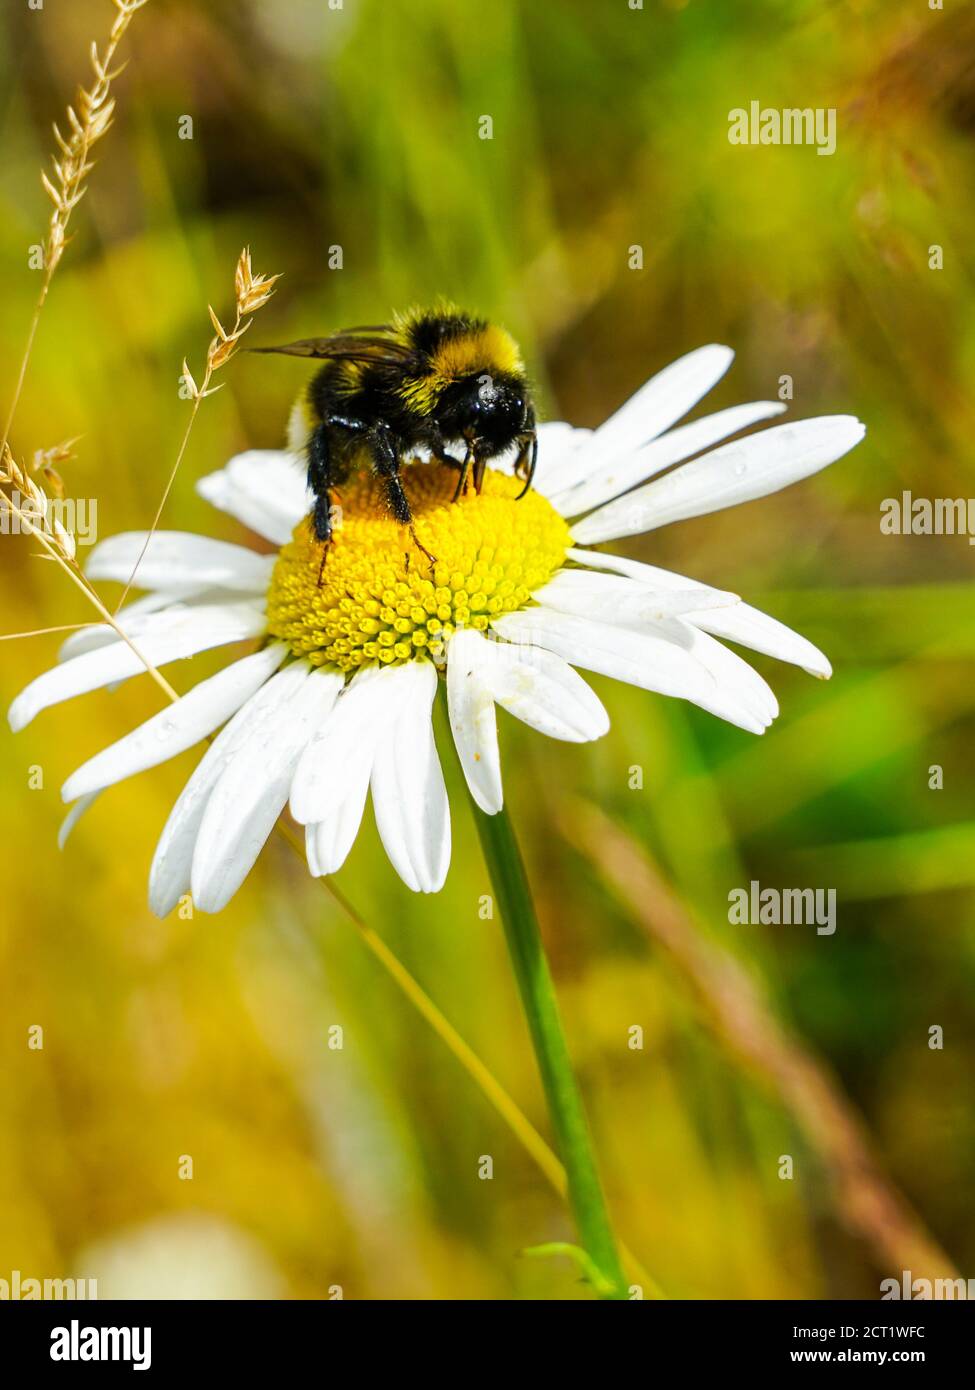 l'ape bumble succhia il nettare del fiore dalle margherite Foto Stock